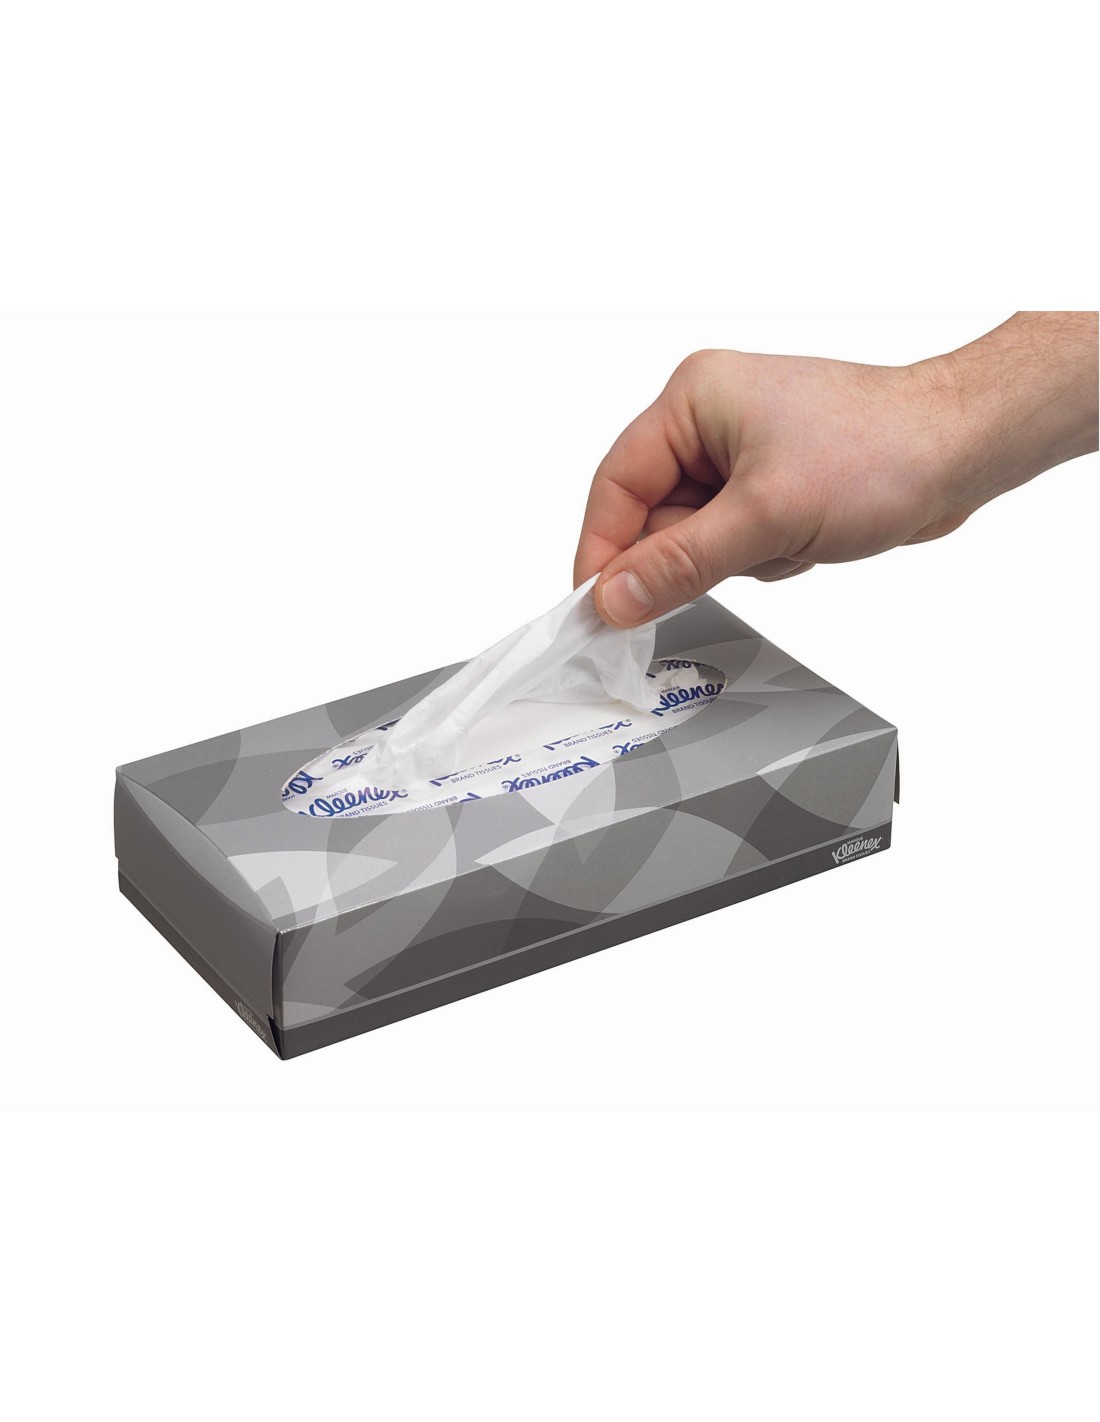 Boîtes de mouchoirs Kleenex® 8824 - 12 x paquets de 72 mouchoirs (864 au  total)